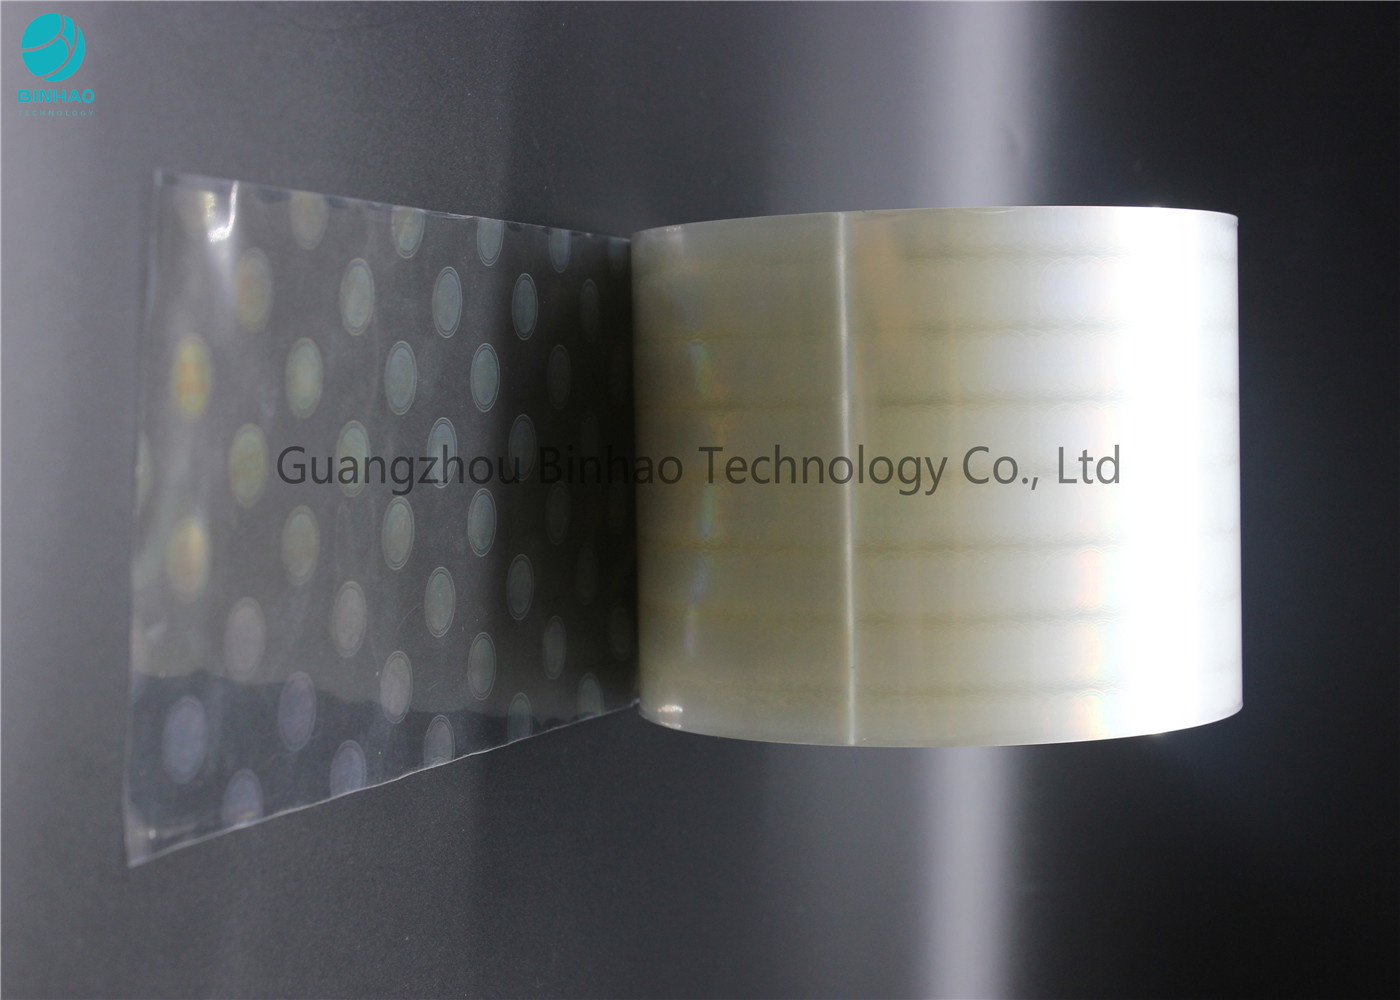 Corona xử lý nhiệt Sealable BOPP phim cuộn, Metalized Polyester phim tùy chỉnh